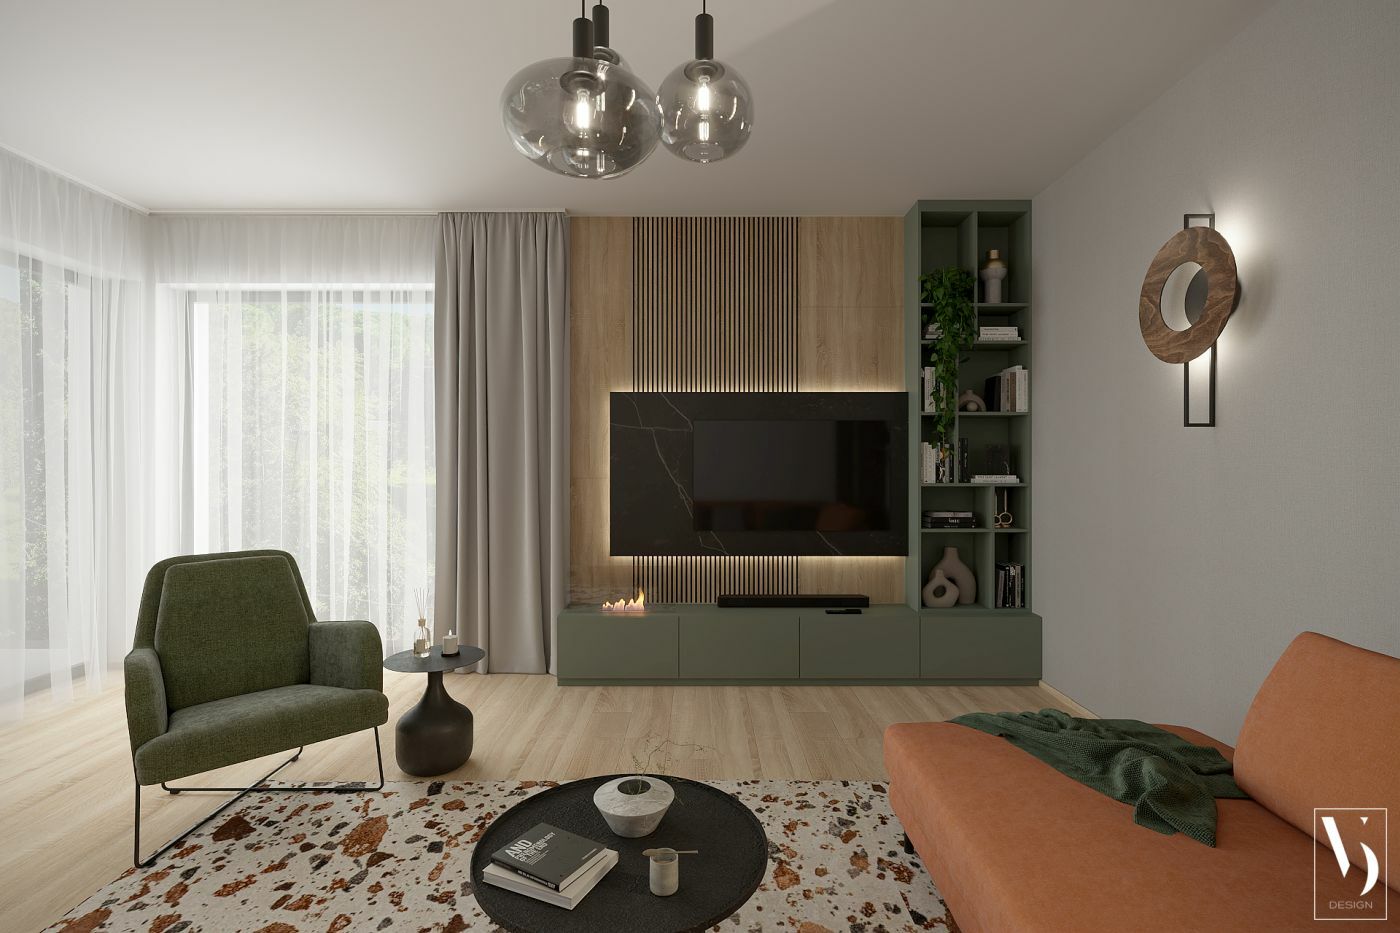 Kanapé, szóló fotel és modern nappali fal